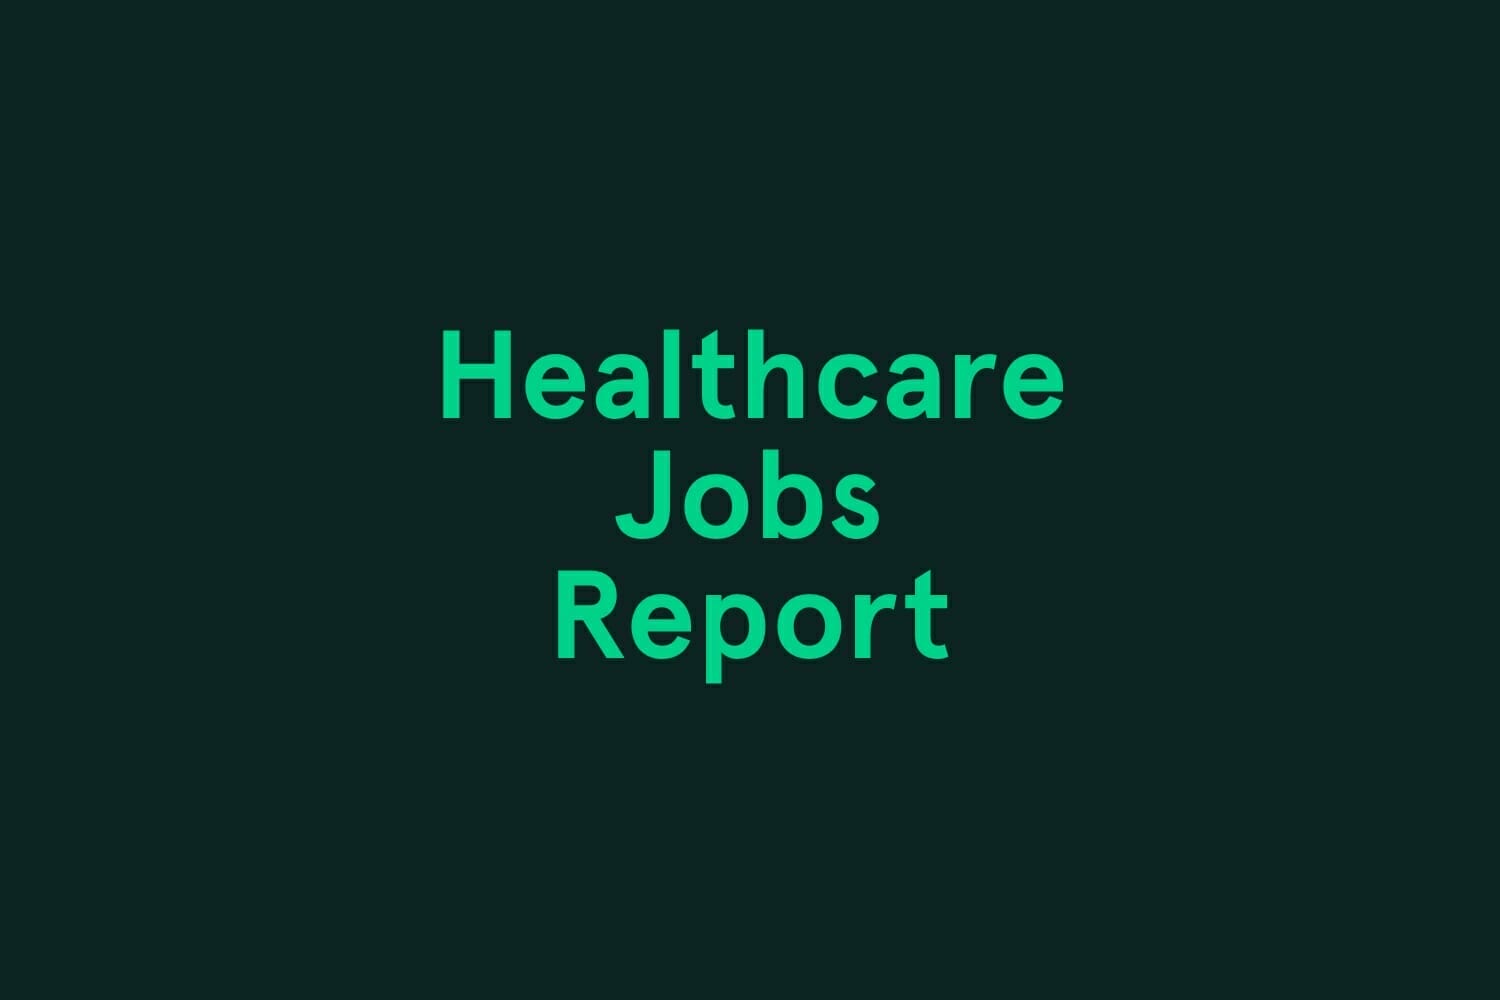 October Healthcare Jobs Report Infographic